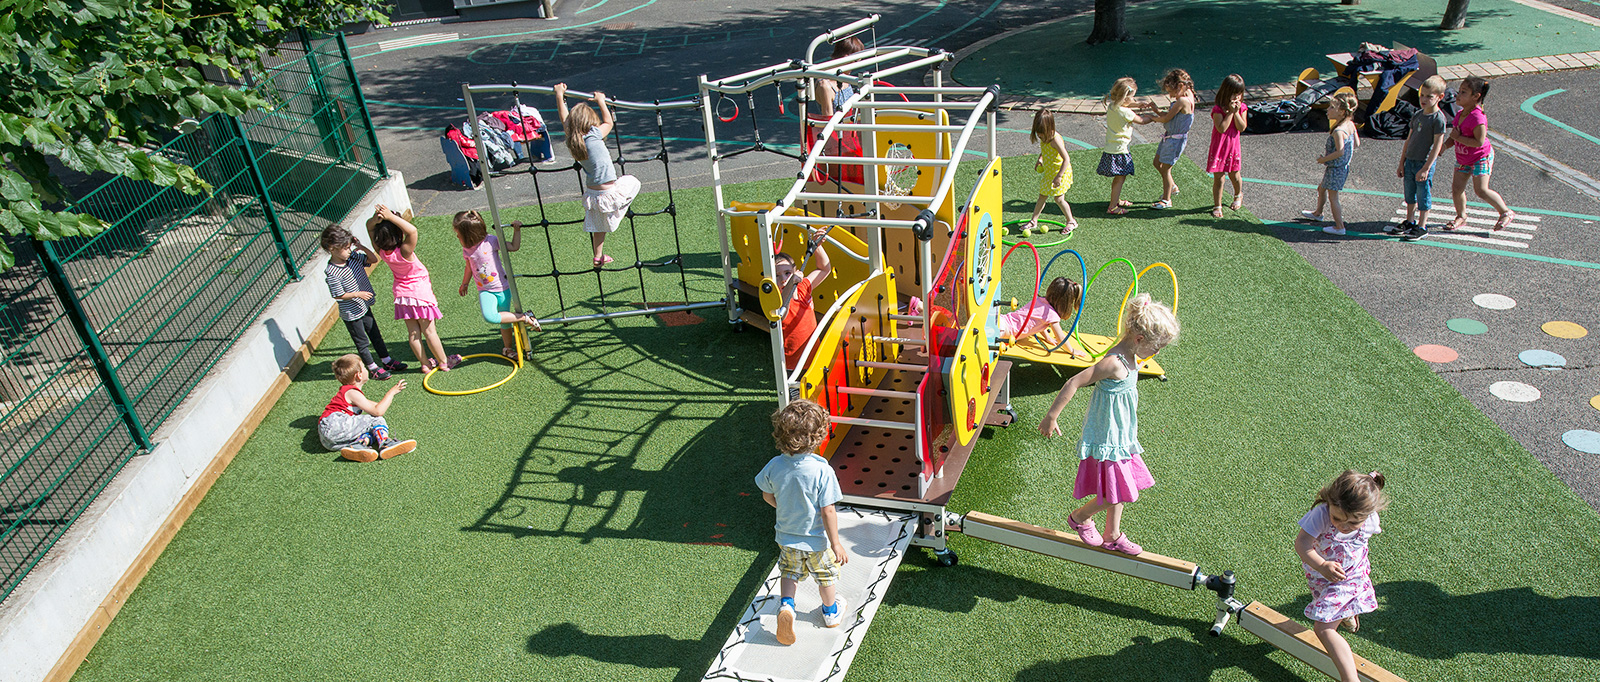 Aire de jeux école, Fabricant aires de jeux extérieur pour école - Proludic  France